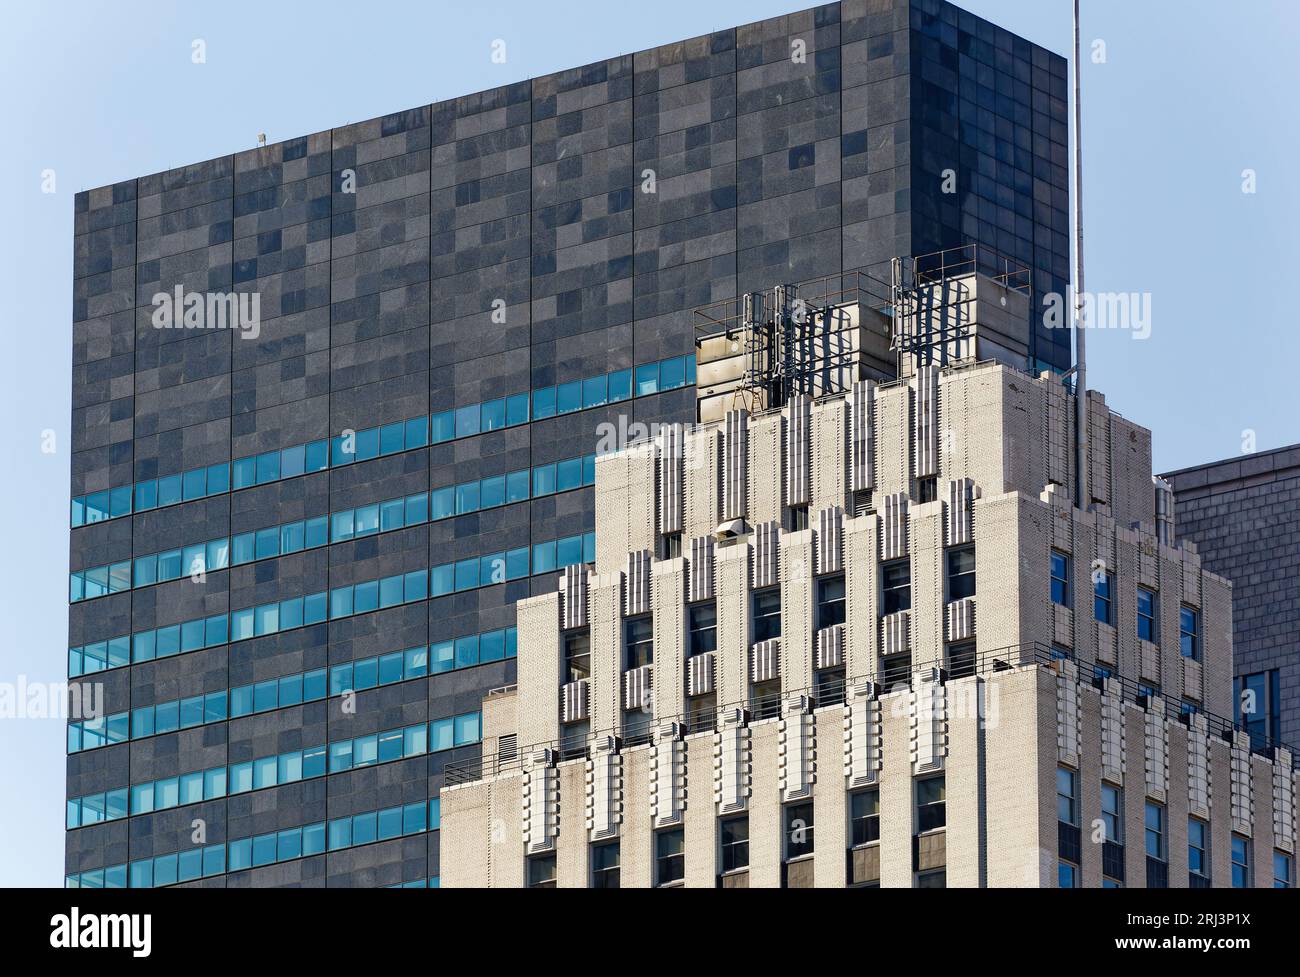 Die Fensterbänder brechen die schwarz-graue Granitfassade des IBM Building auf; weiße Ziegel und Stein 745 Fifth Avenue bilden einen starken Kontrast. Stockfoto